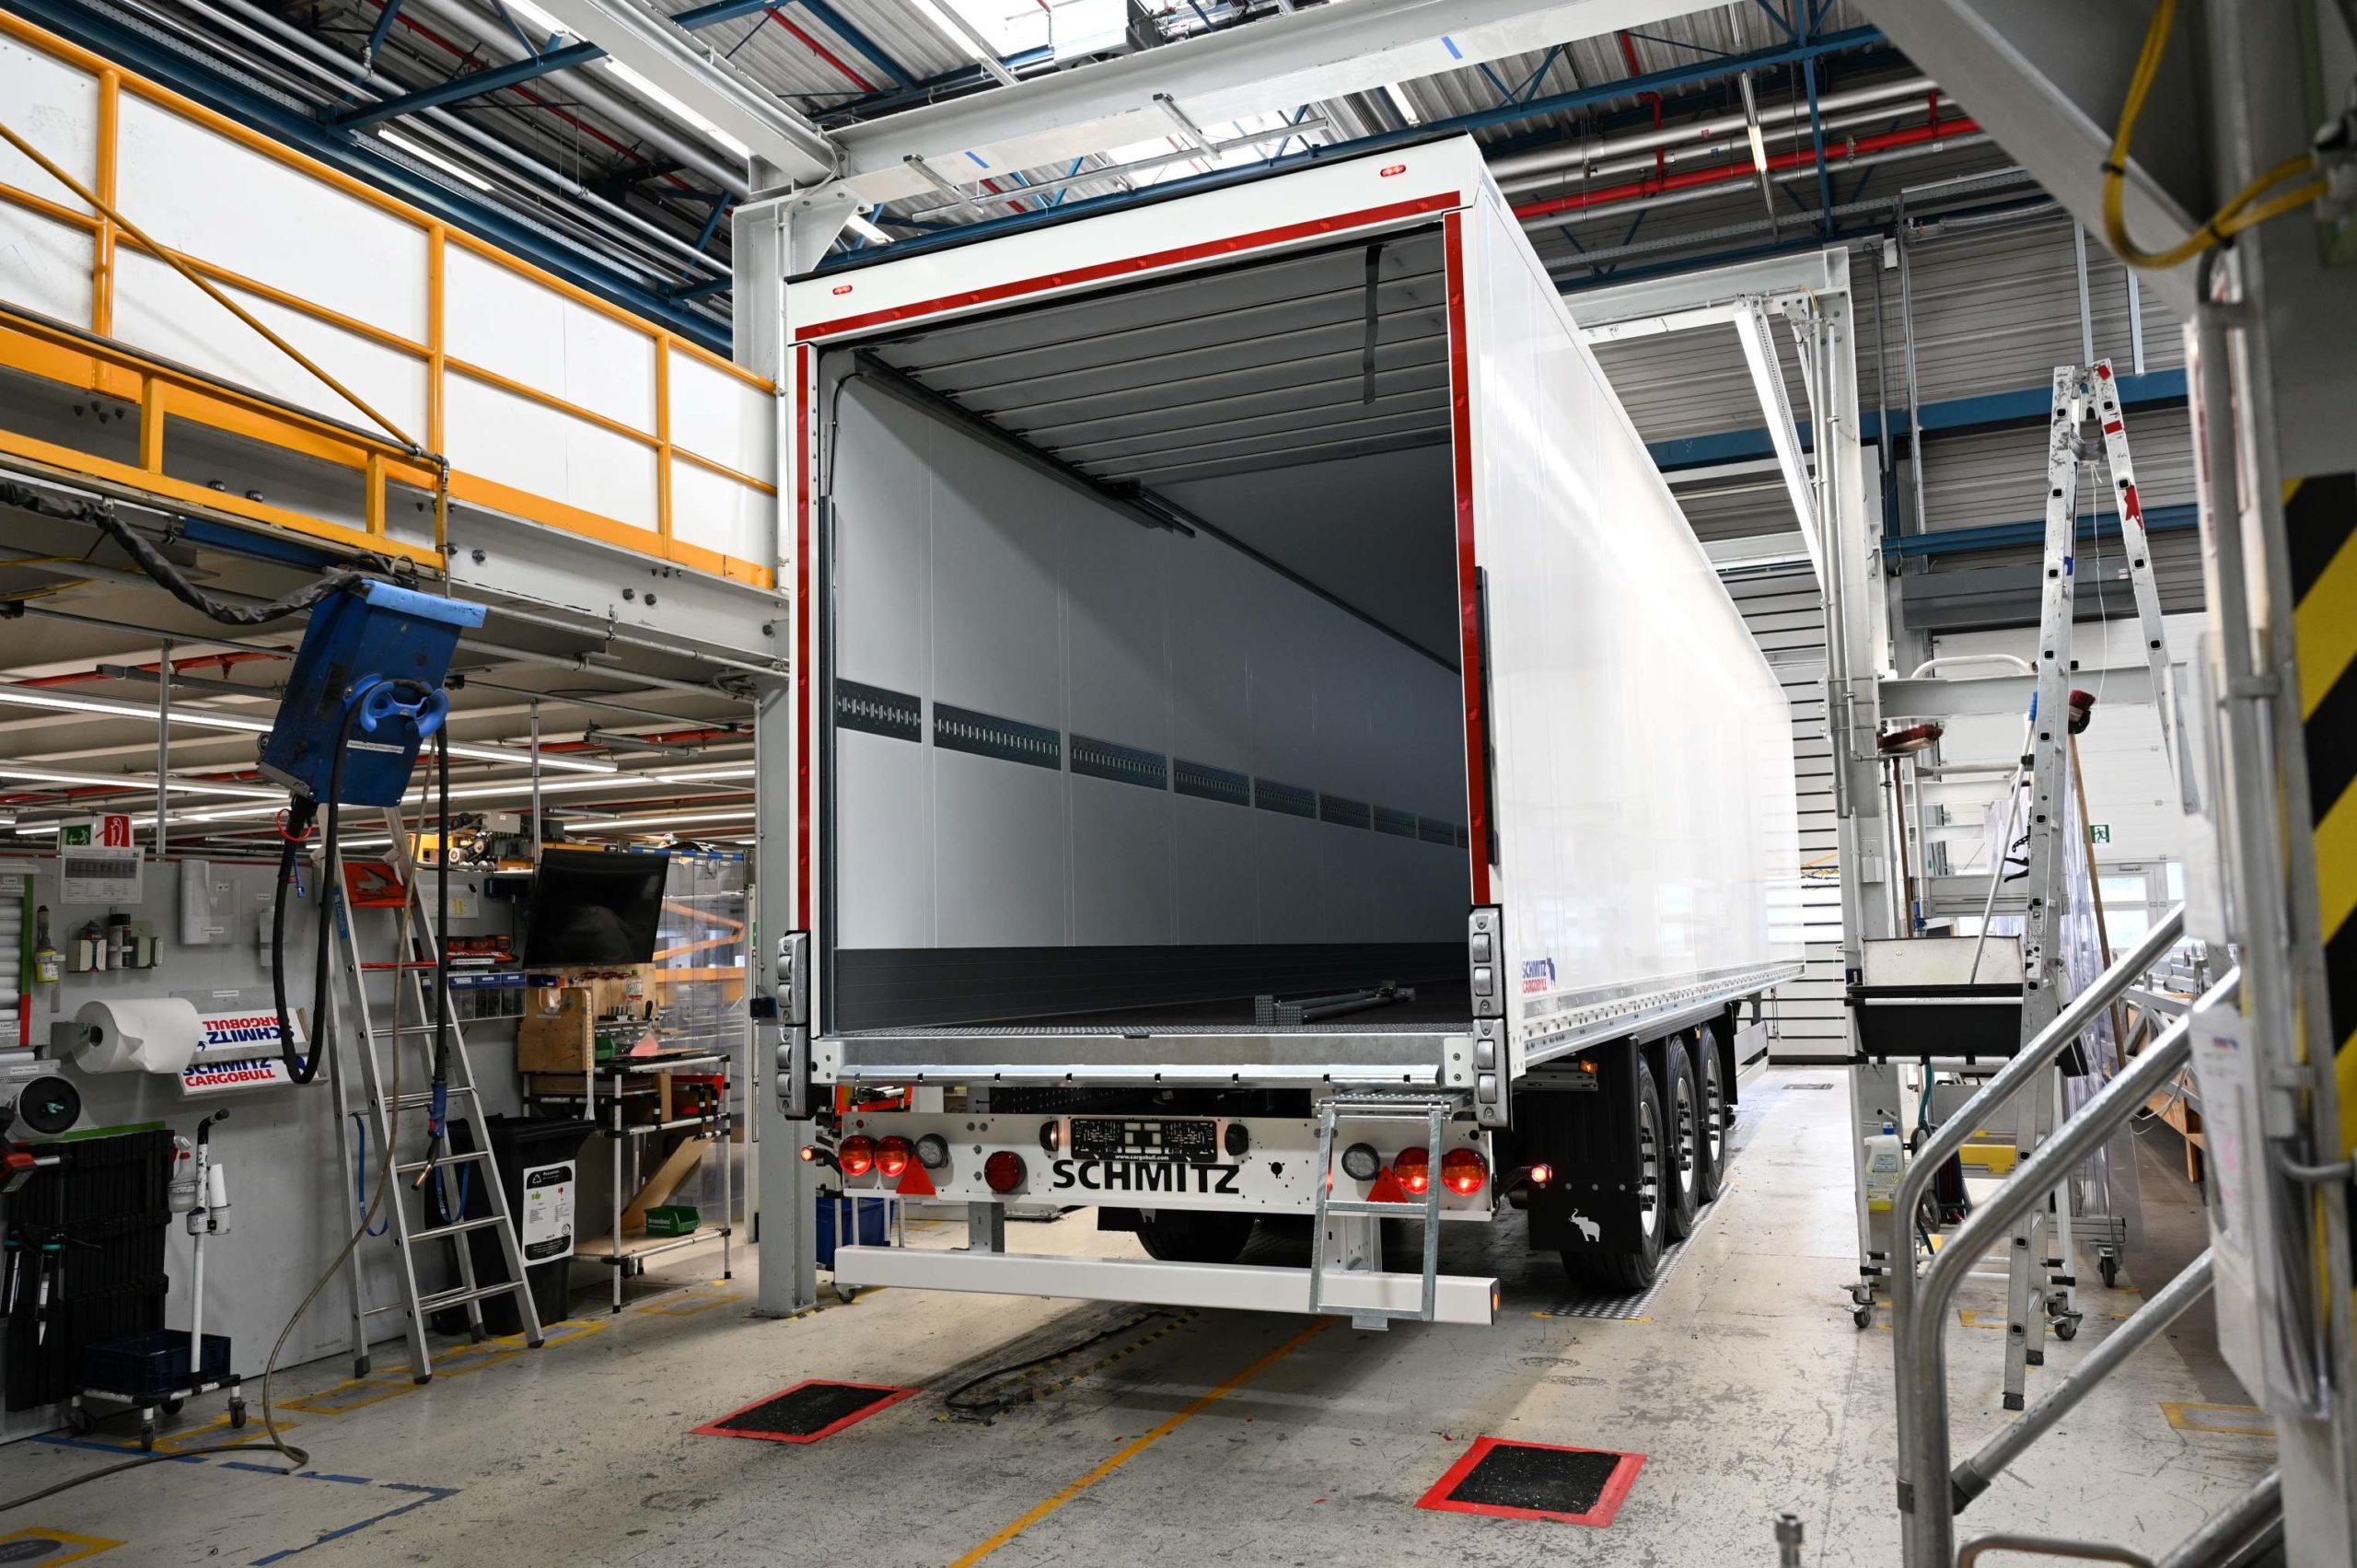 Vreden es una de las fábricas europeas de Schmitz Cargobull donde porduce furgones y frigos. Además en exclusiva fabrica el material aislante exclusivo FerroPlast y los equipos de frío de la marca.